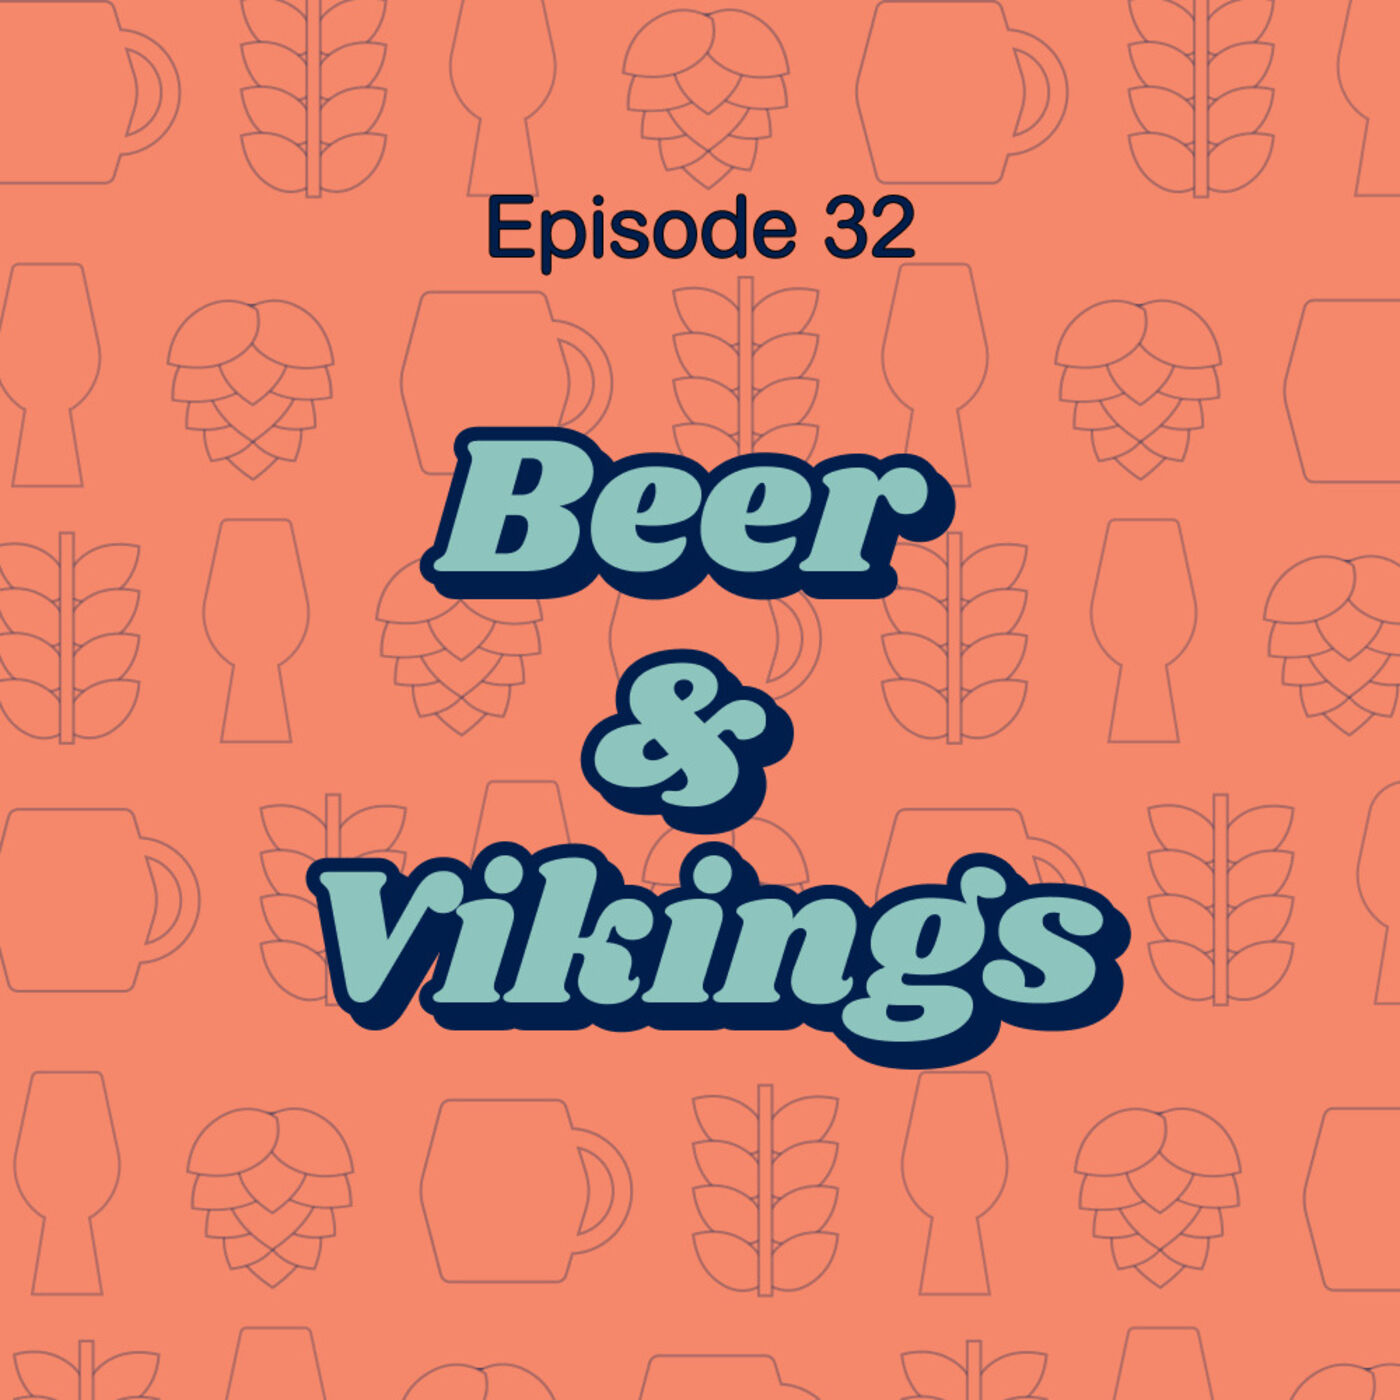 32: Beer and Vikings